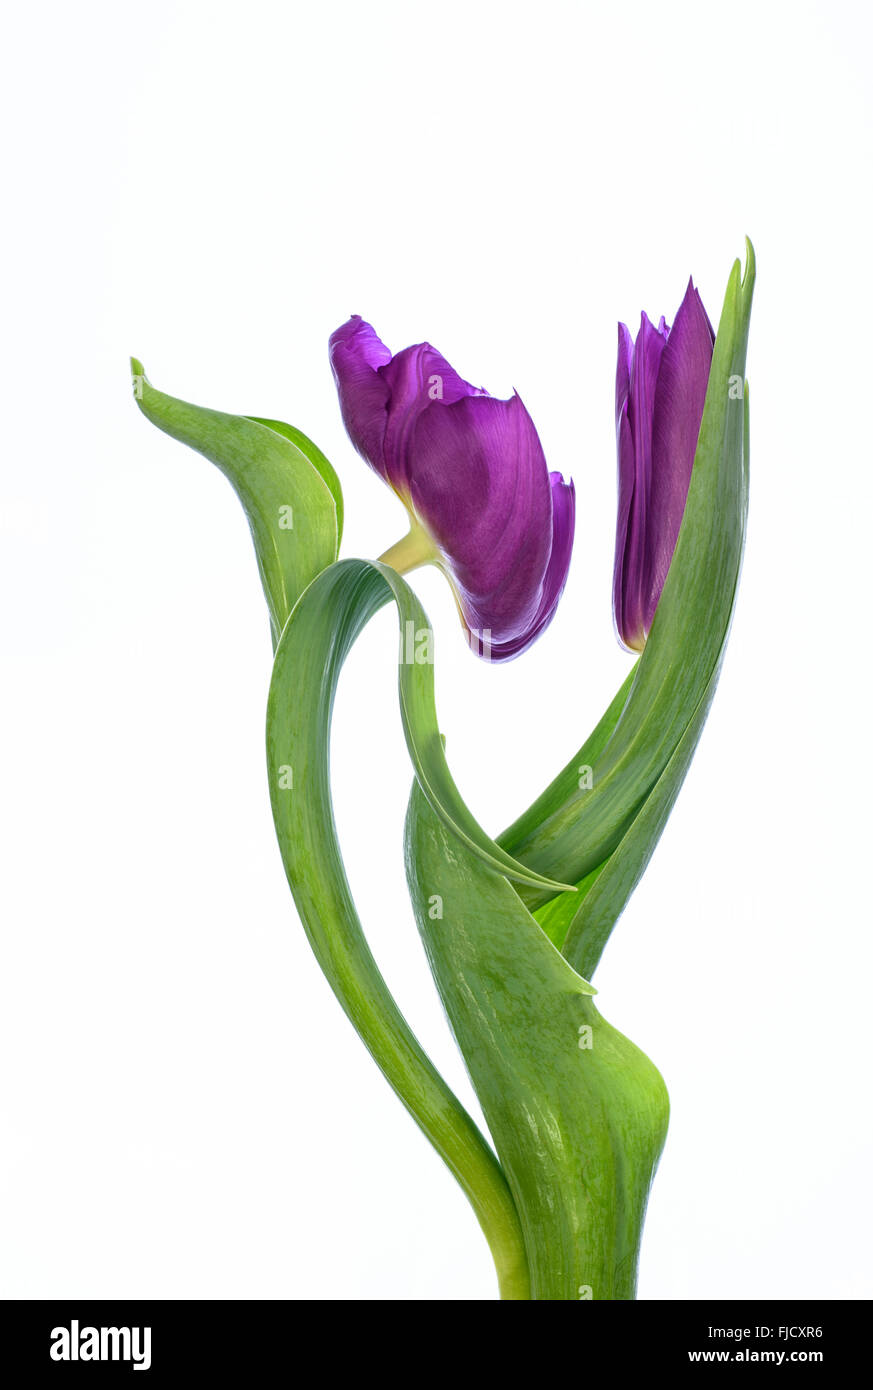 Fotografia manipolata digitalmente una coppia di purple tulip fiori contro uno sfondo bianco Foto Stock